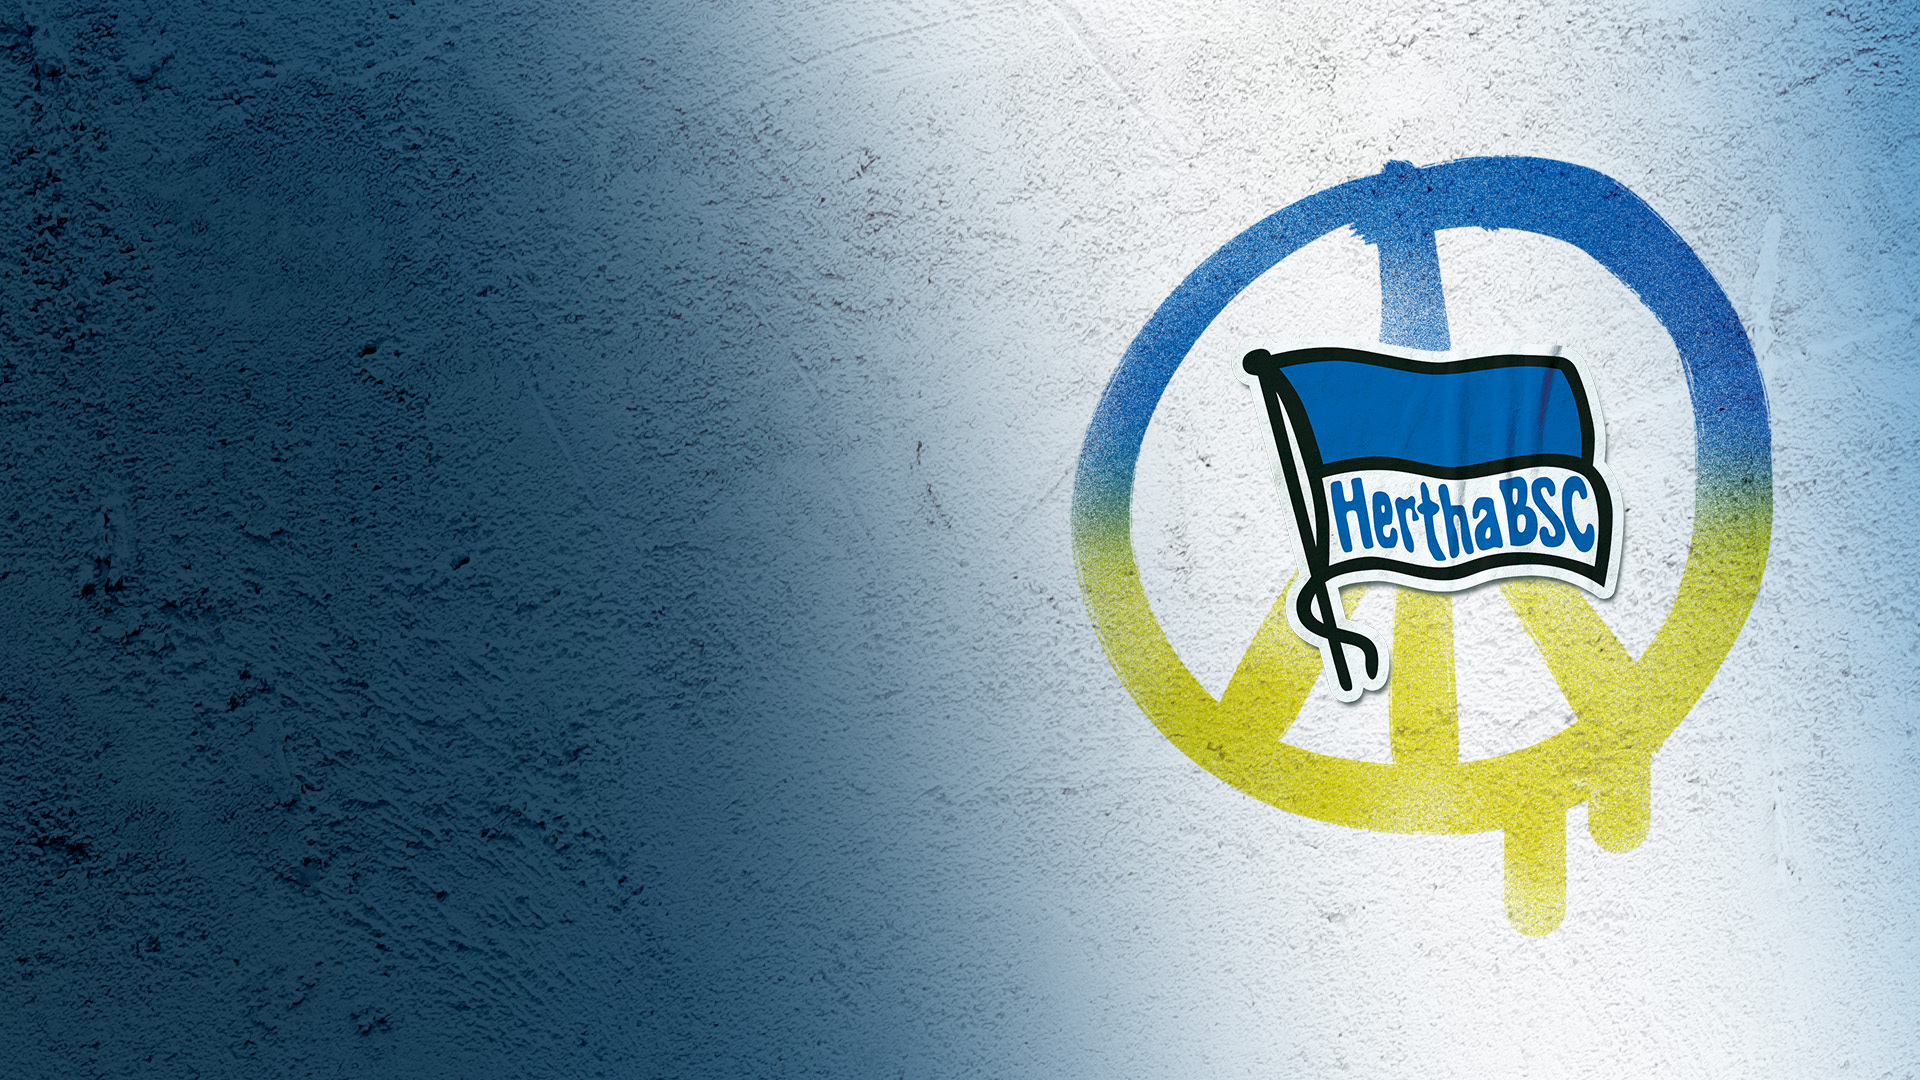 Das Peace-Zeichen in den Farben der Ukrainischen Flagge hinter dem Hertha BSC Logo.